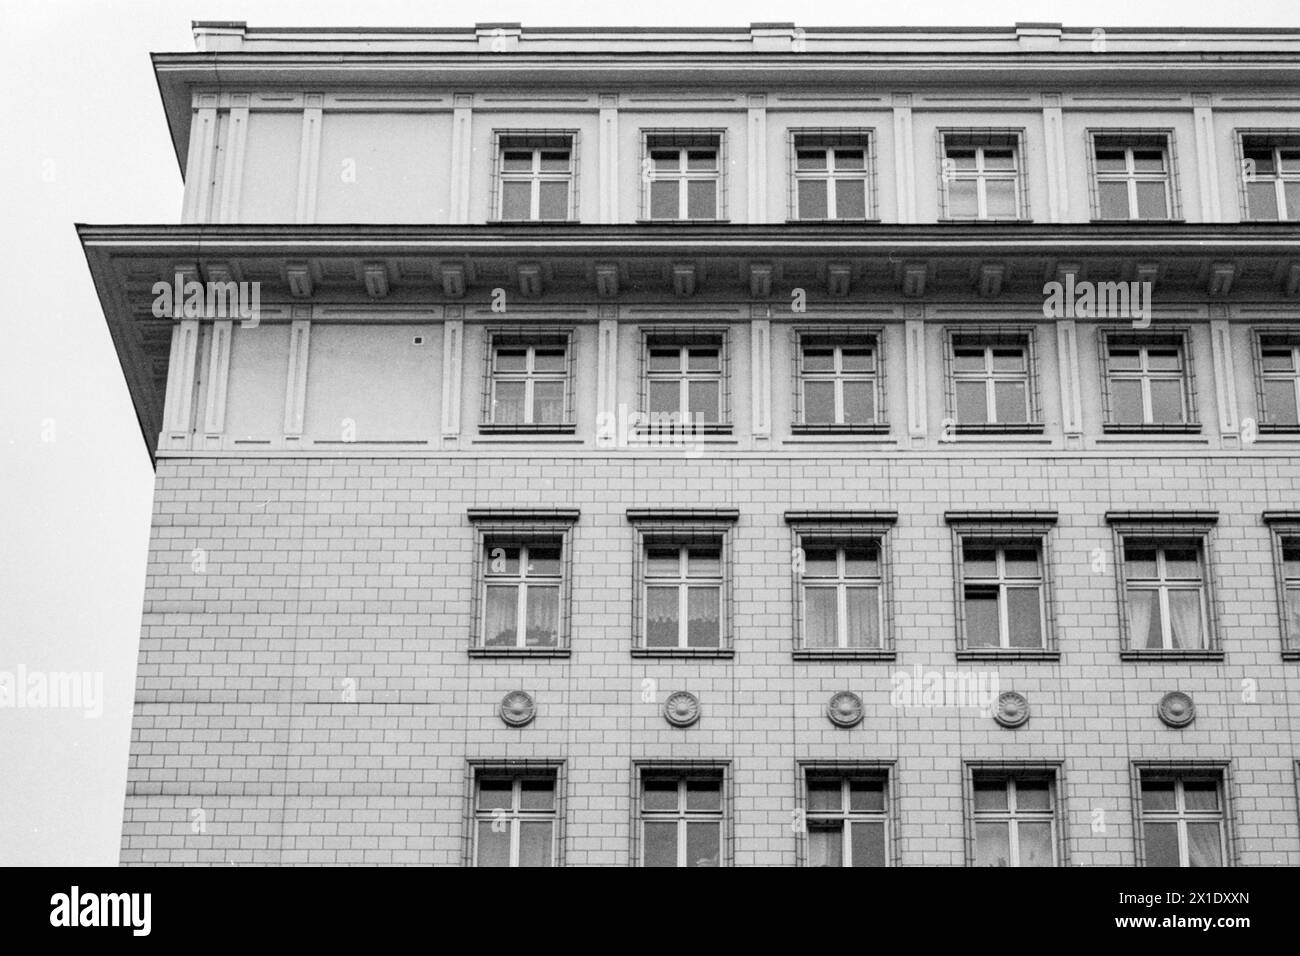 Façade Plattebau façade de l'ancien immeuble d'appartements Plattenbau est-allemand à l'intérieur du district de Friedrichshain, construit pendant la reconstruction après la seconde Guerre mondiale. Berlin, Allemagne. Berlin Friedrichshain Berlin Allemagne Copyright : xGuidoxKoppesxPhotox Banque D'Images